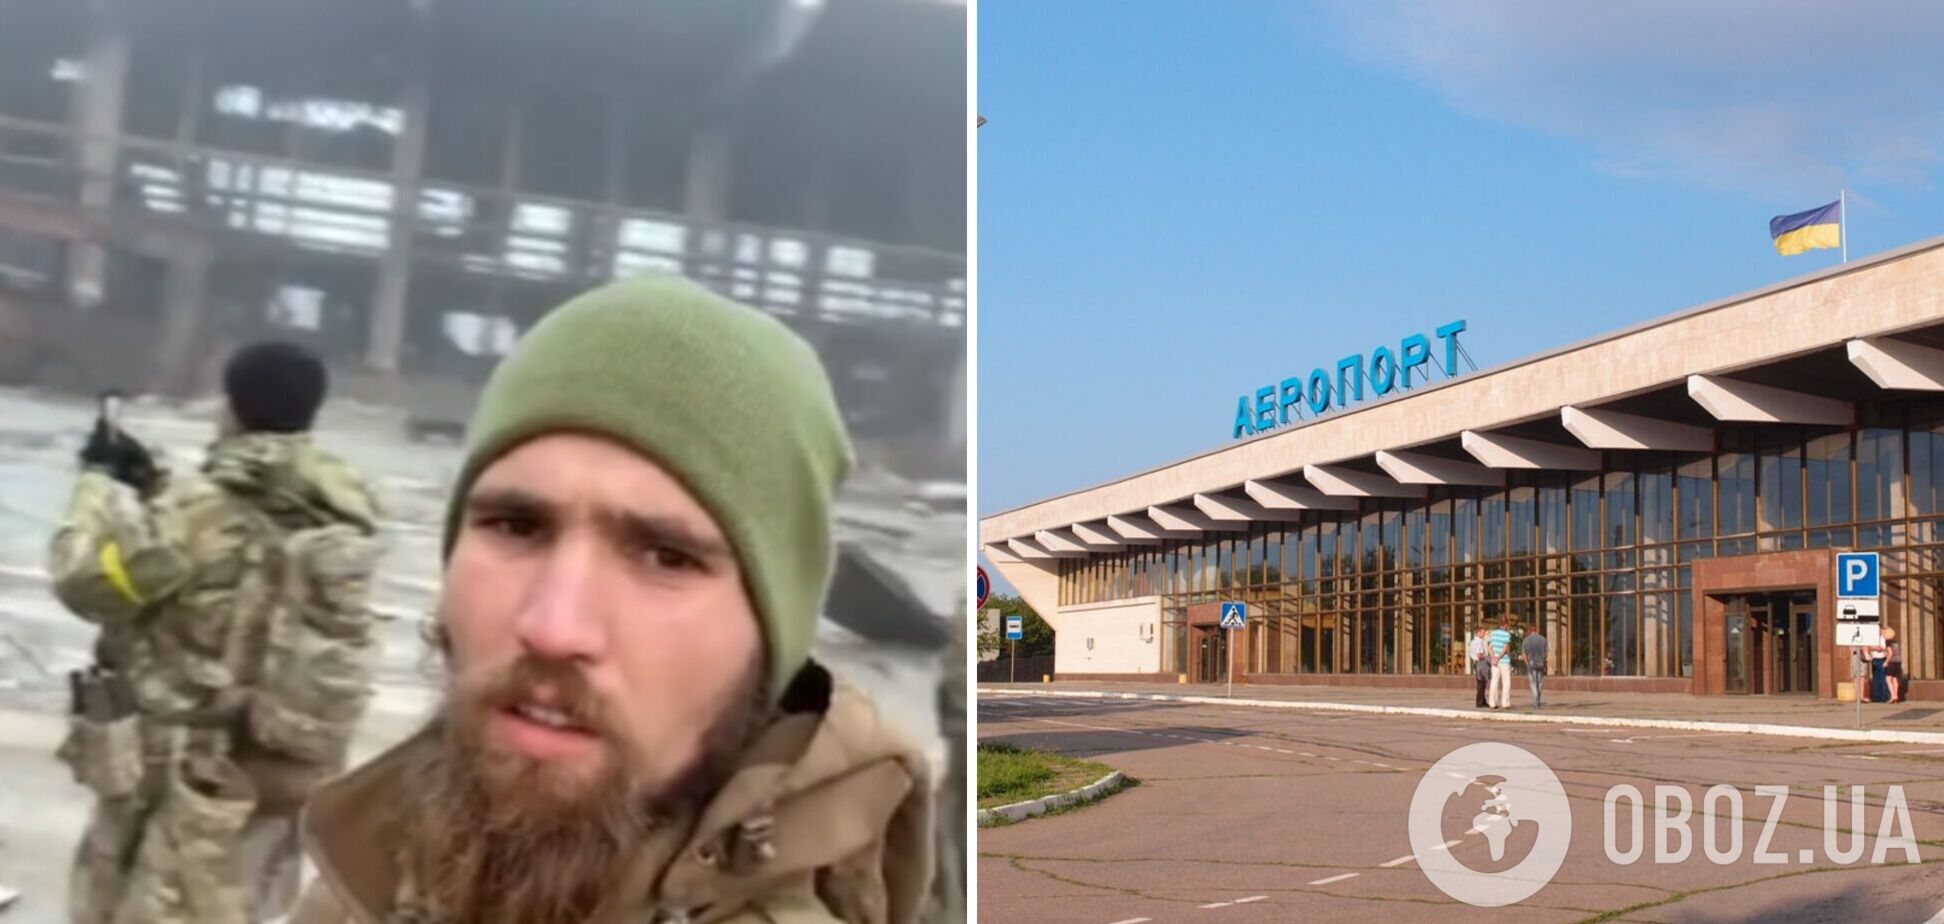 Українські захисники показали, що залишилось від знаменитого аеропорту 'Херсон' в Чорнобаївці. Відео